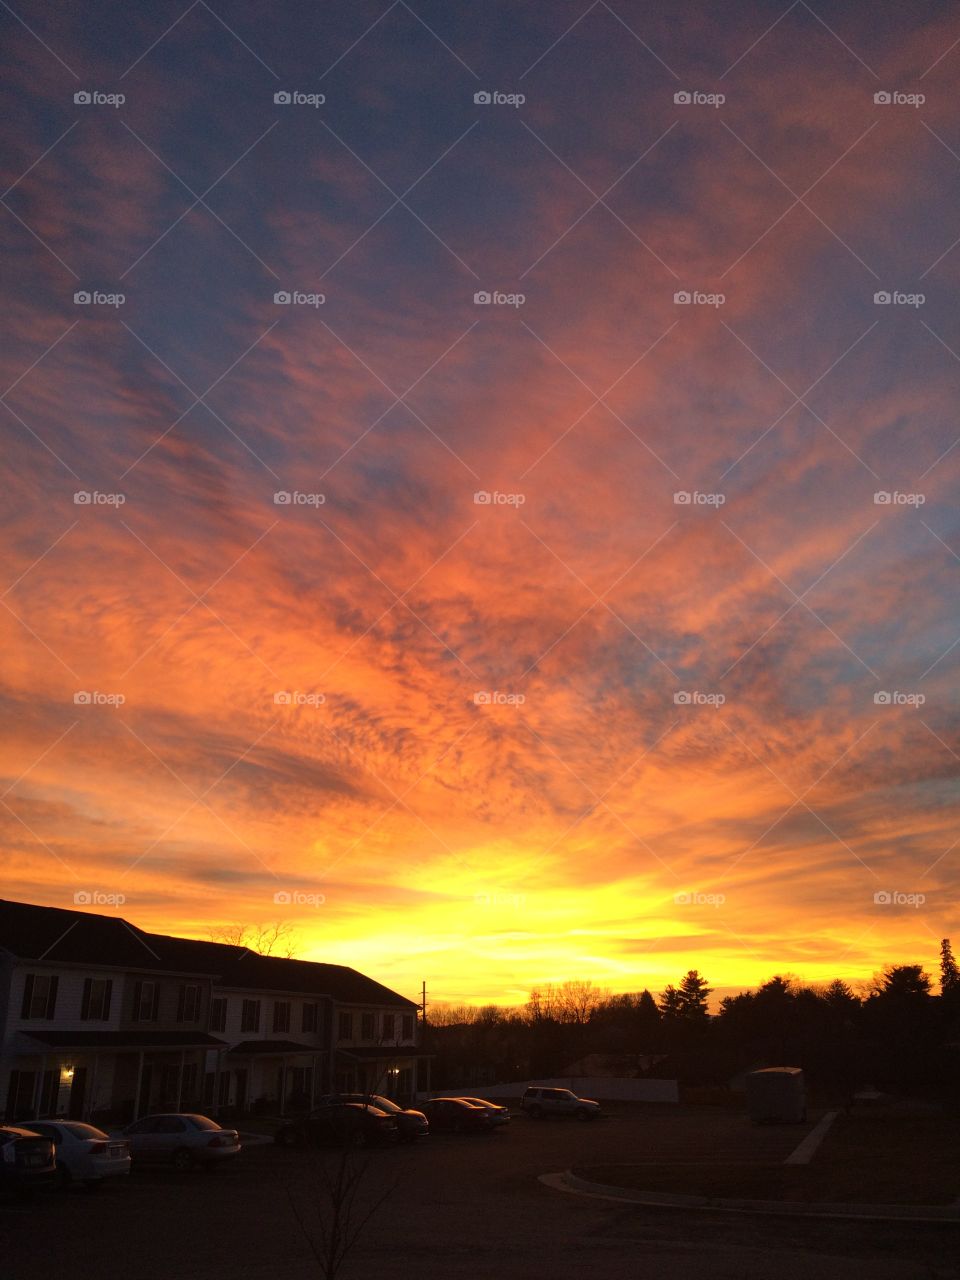 Sunset sky in VA